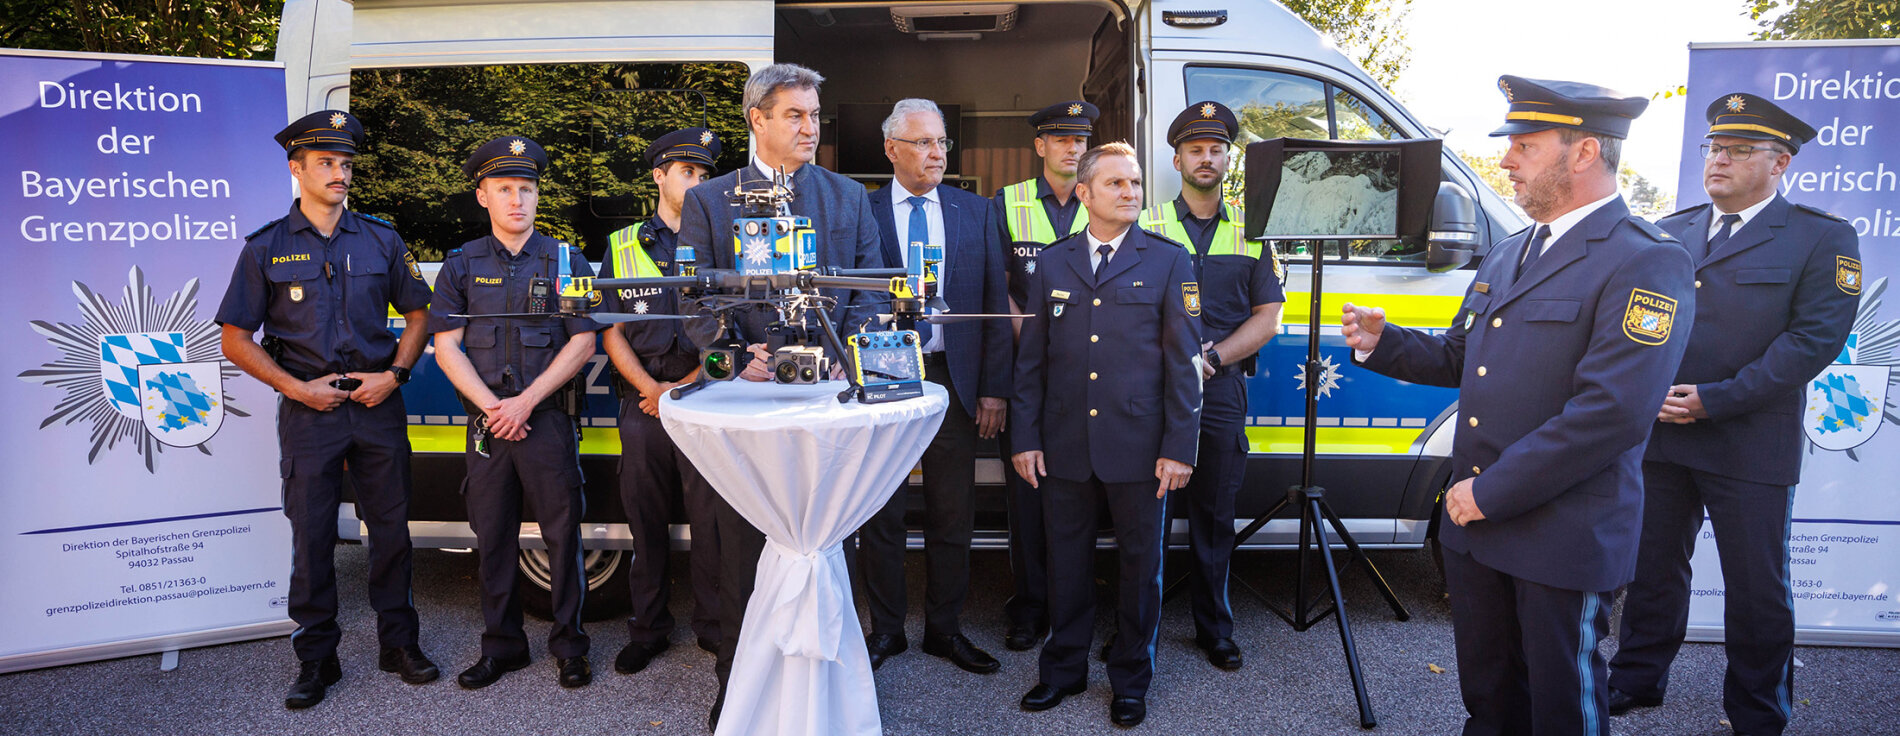 Söder und Herrmann bei Pressekonferenz vor Polizeiauto mit Grenzpolizisten in Uniform. Im Vordergrund Polizeidrohne